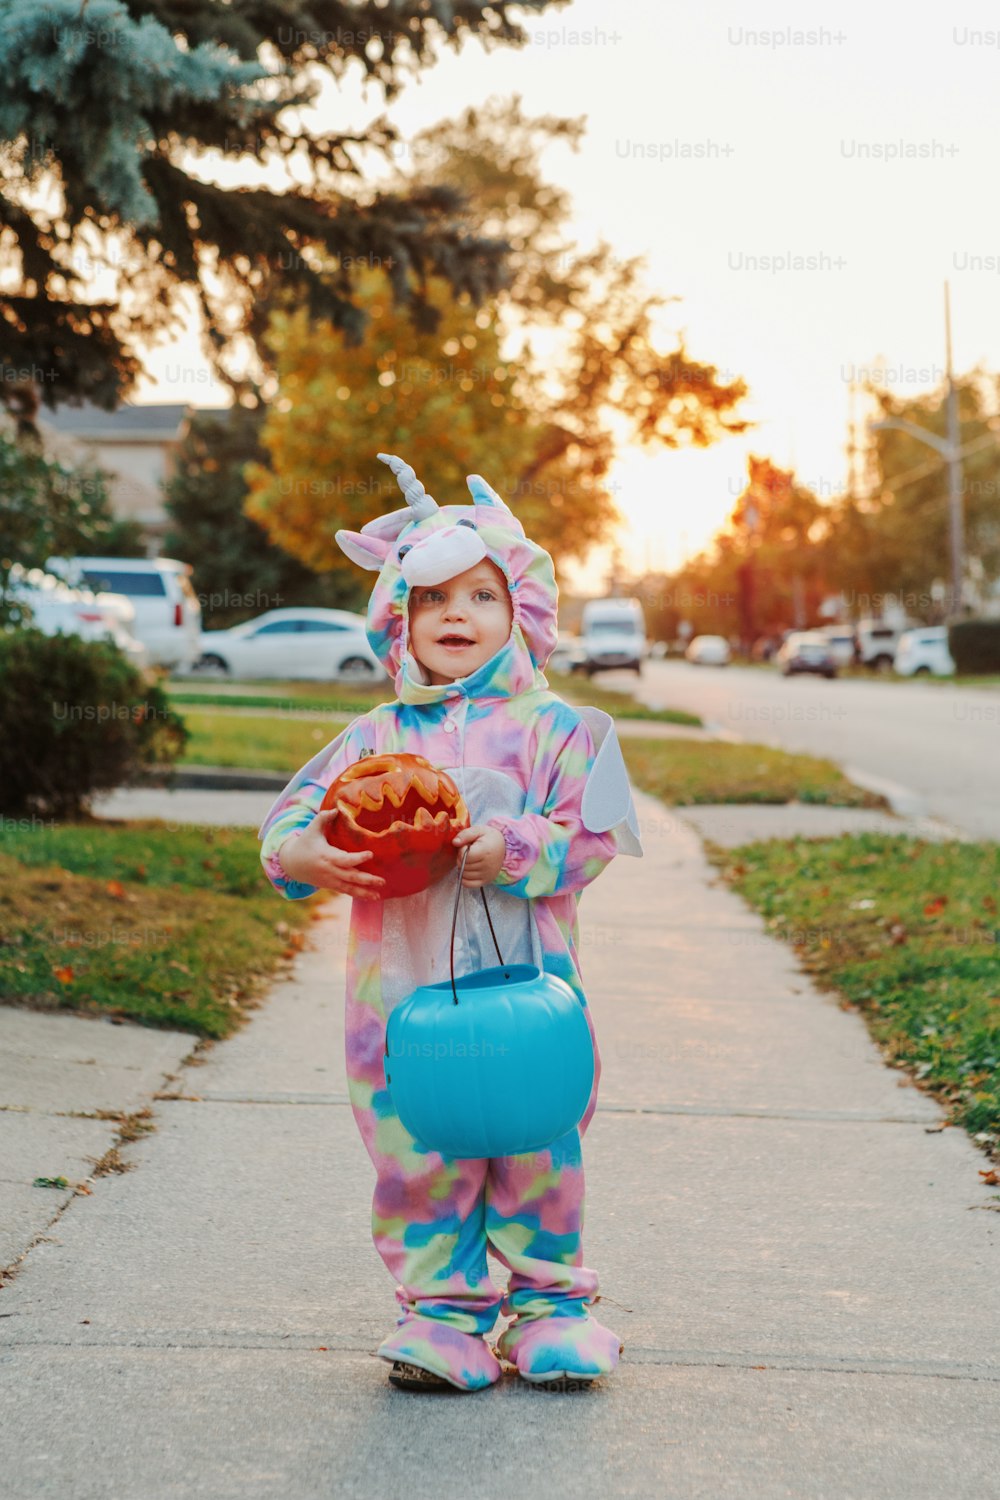 Süßes oder Saures. Glückliches Kleinkind mit rotem Kürbis und Korb, das am Halloween-Feiertag Süßes oder Saures macht. Süßes Kind im Partykostüm, das zu Nachbarhäusern geht, um Süßigkeiten und Leckereien zu kaufen.